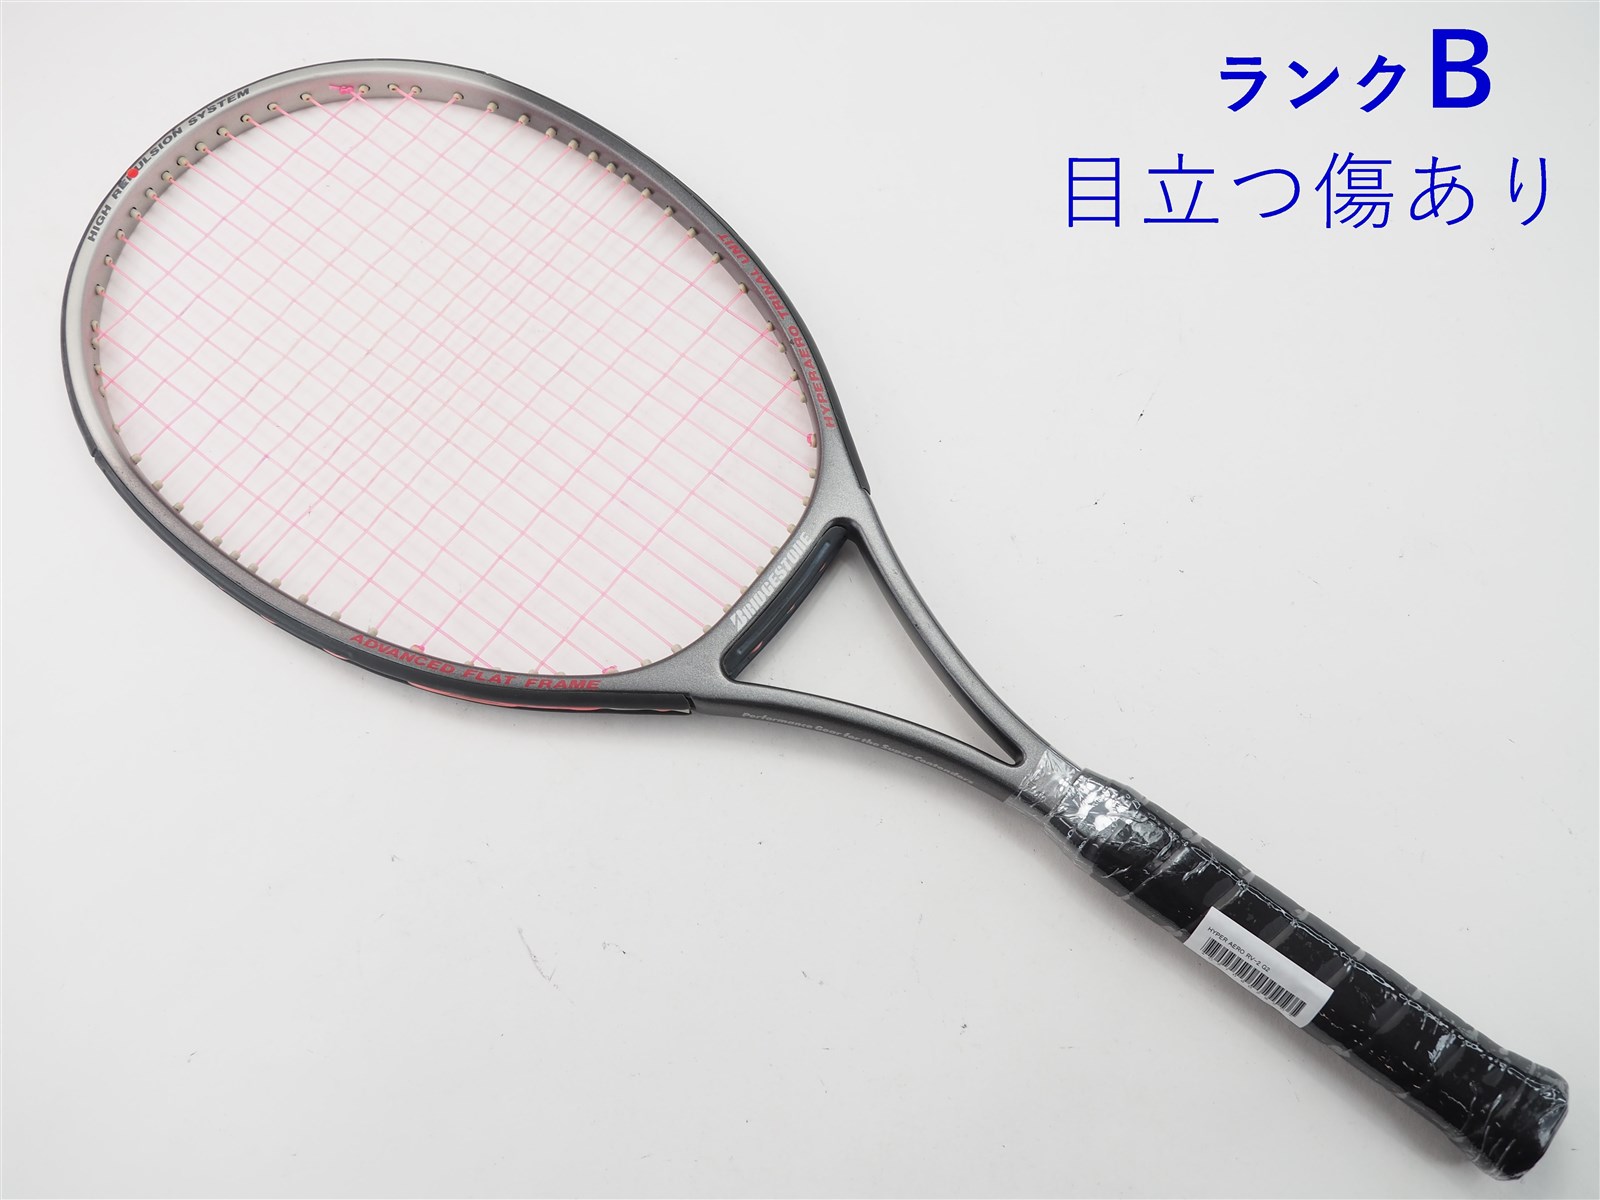 テニスラケット ブリヂストン ハイパーアエロ RV-2 (G2相当)BRIDGESTONE HYPER AERO RV-2